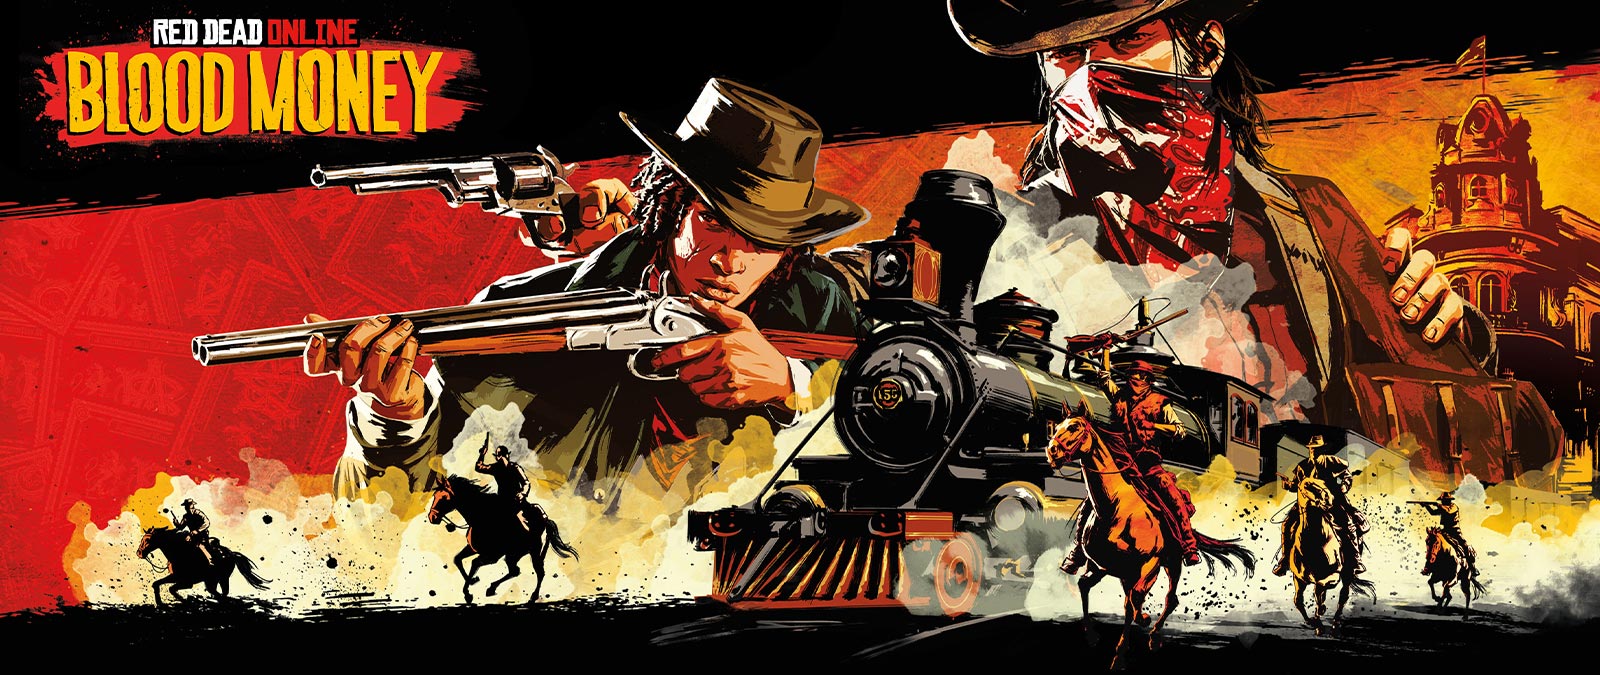 Red Dead Online: Blood Money, bewaffnete Banditen überfallen zu Pferd einen Zug.